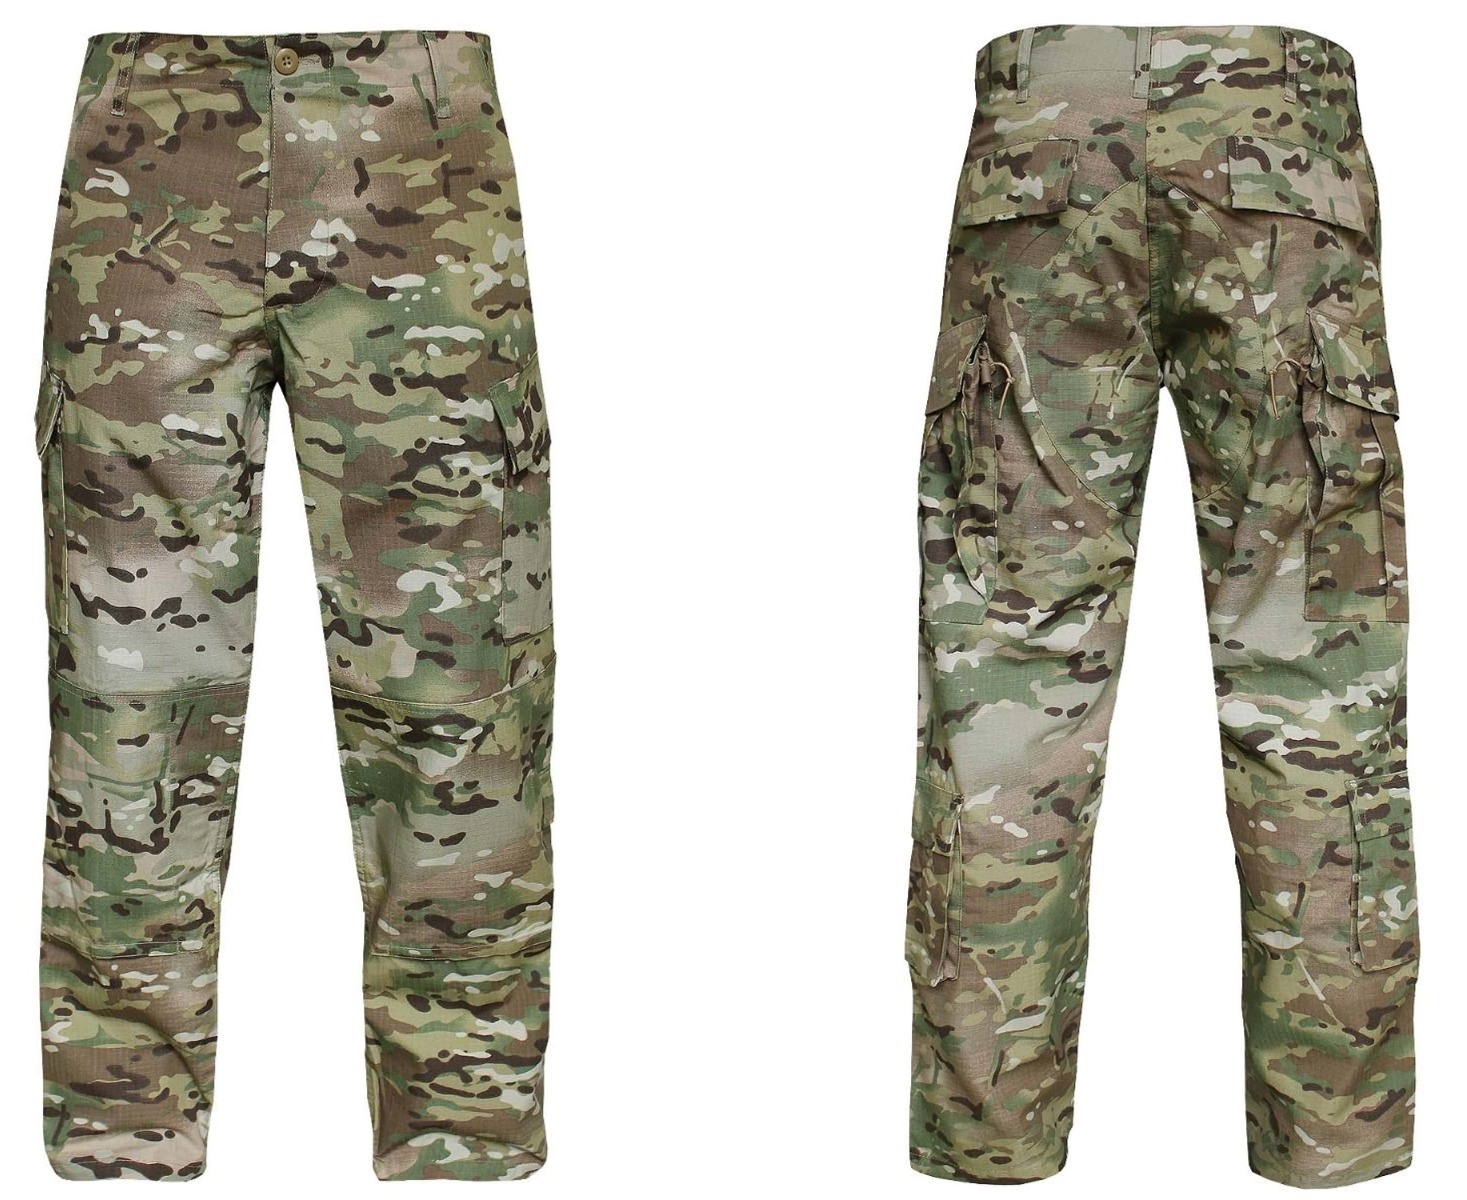 Pridobite svoj par US vojaških hlač ACU Multicamo - vrhunske taktične hlače za udobje, vzdržljivost in funkcionalnost. Primerno za vojaške operacije, pohodništvo, lov in varnostne sile. Opremite se s kakovostnim vojaškim oblačilom!